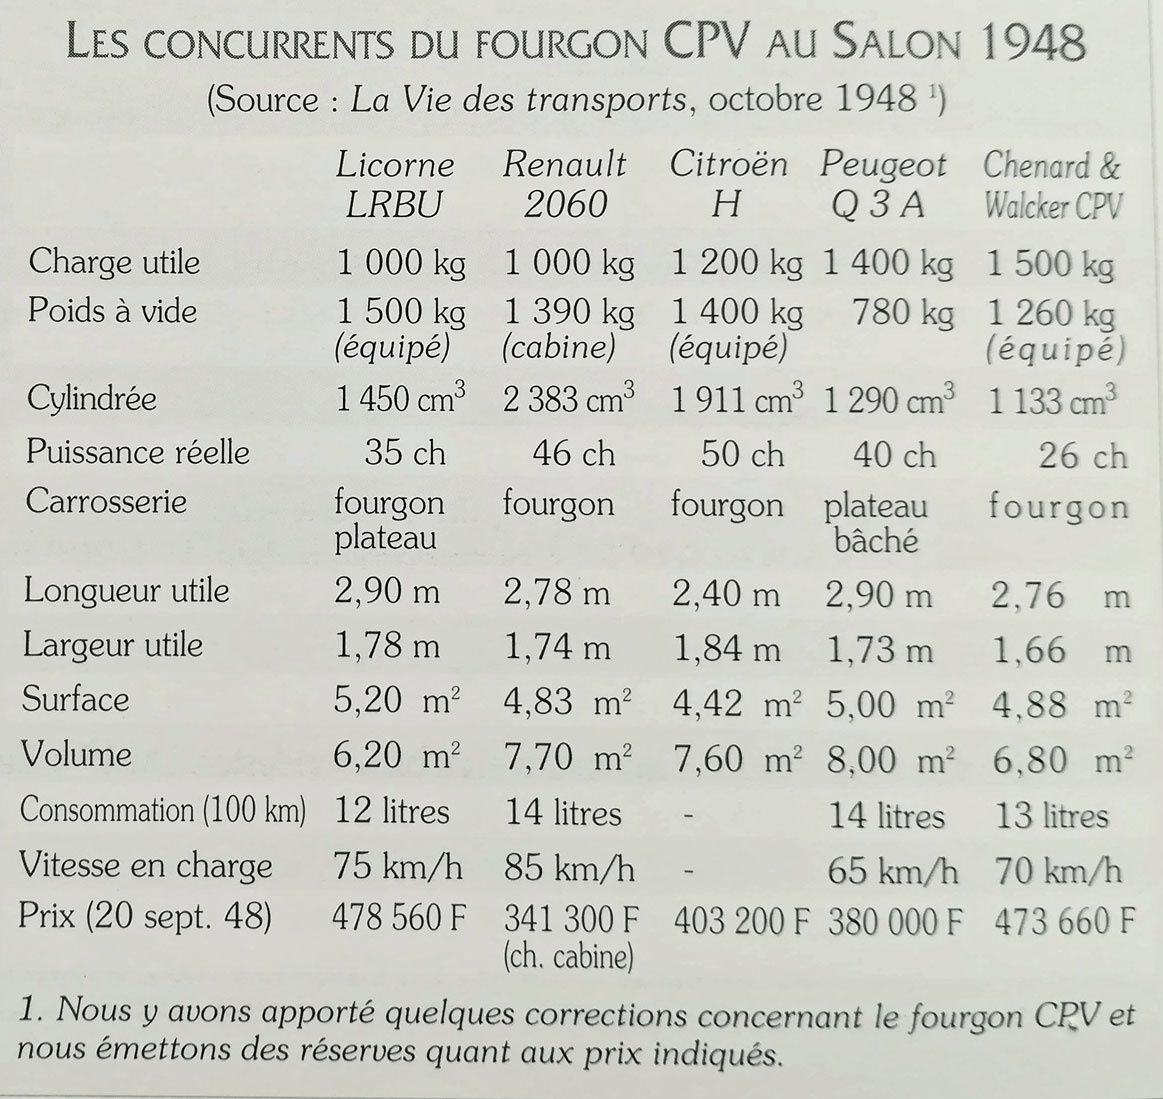 Dès 1948 la concurrence est rude surtout entre les 3 utilitaires des marques Chenard & Walker, Peugeot, Renault et Citroën